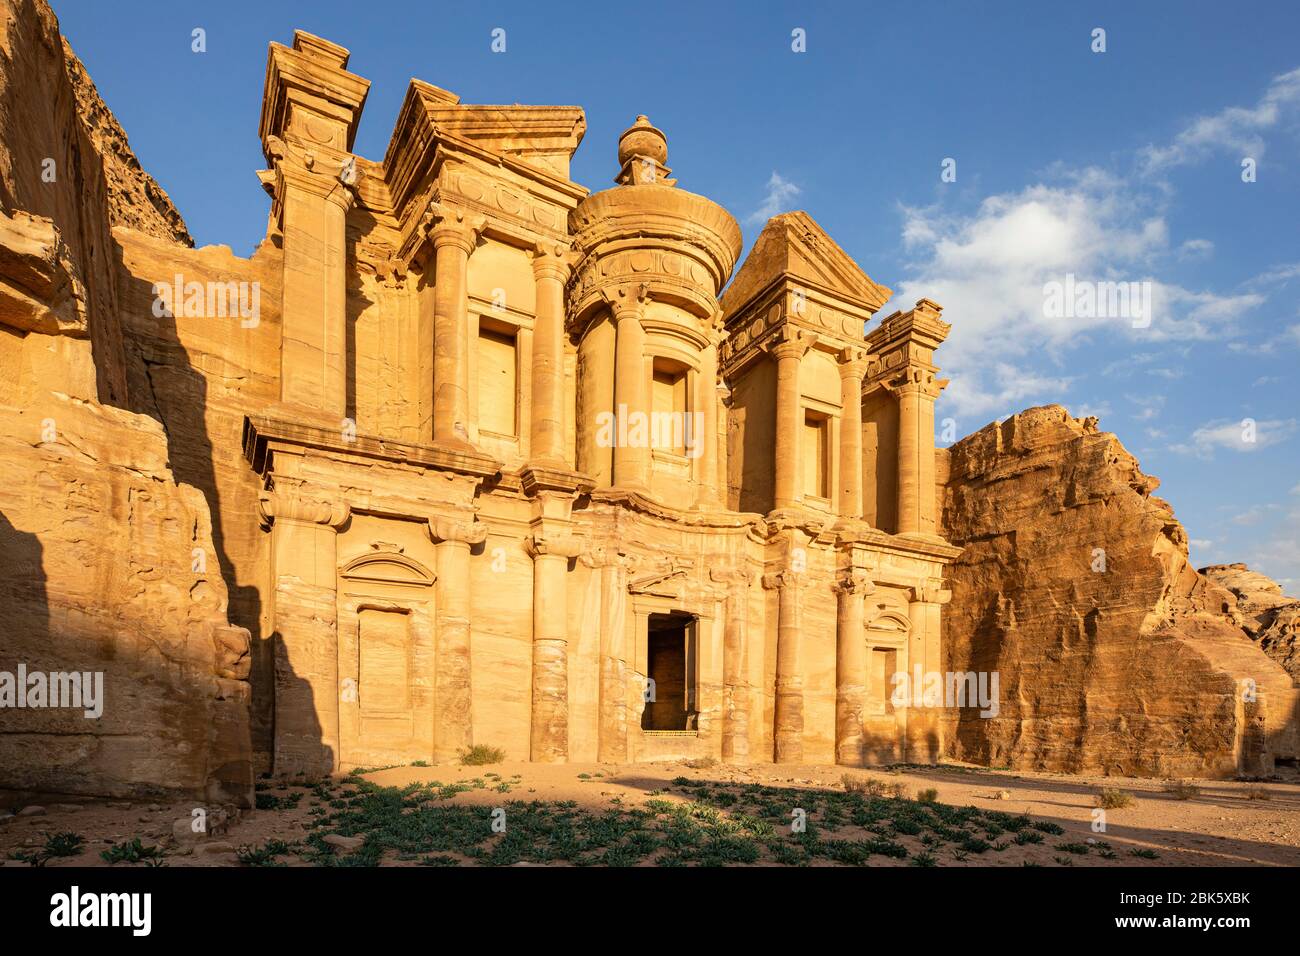 Monastero ad Deir nell'antica città giordana di Petra, Giordania Foto Stock